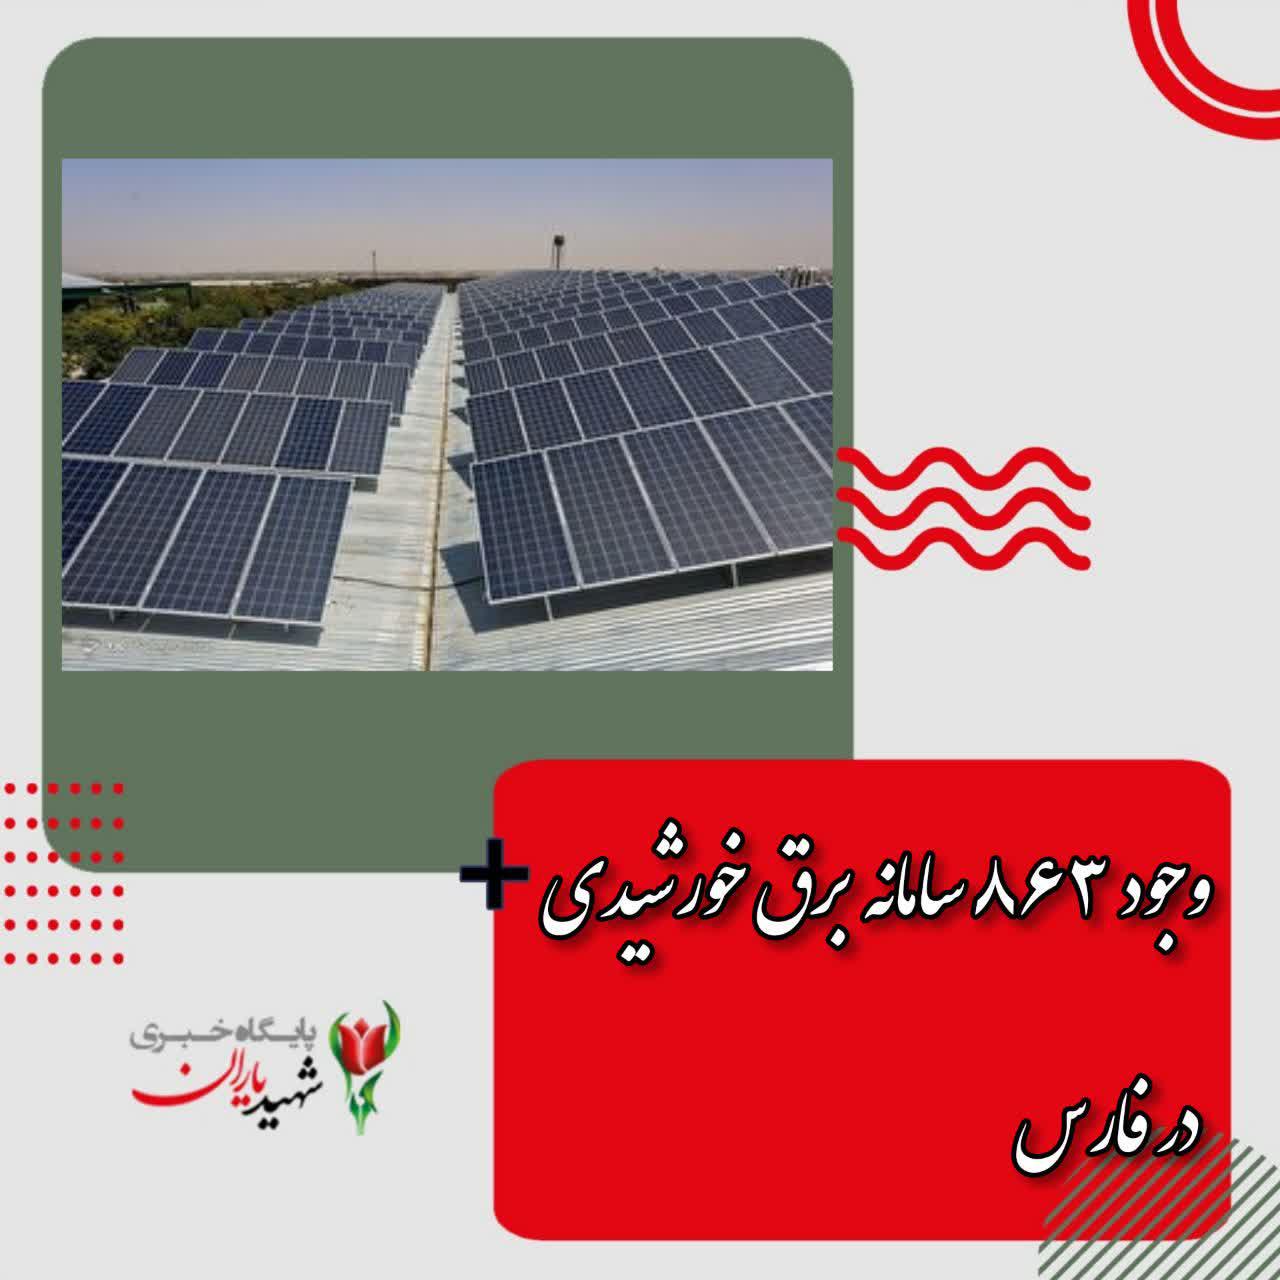 وجود ۸۶۳ سامانه برق خورشیدی در فارس